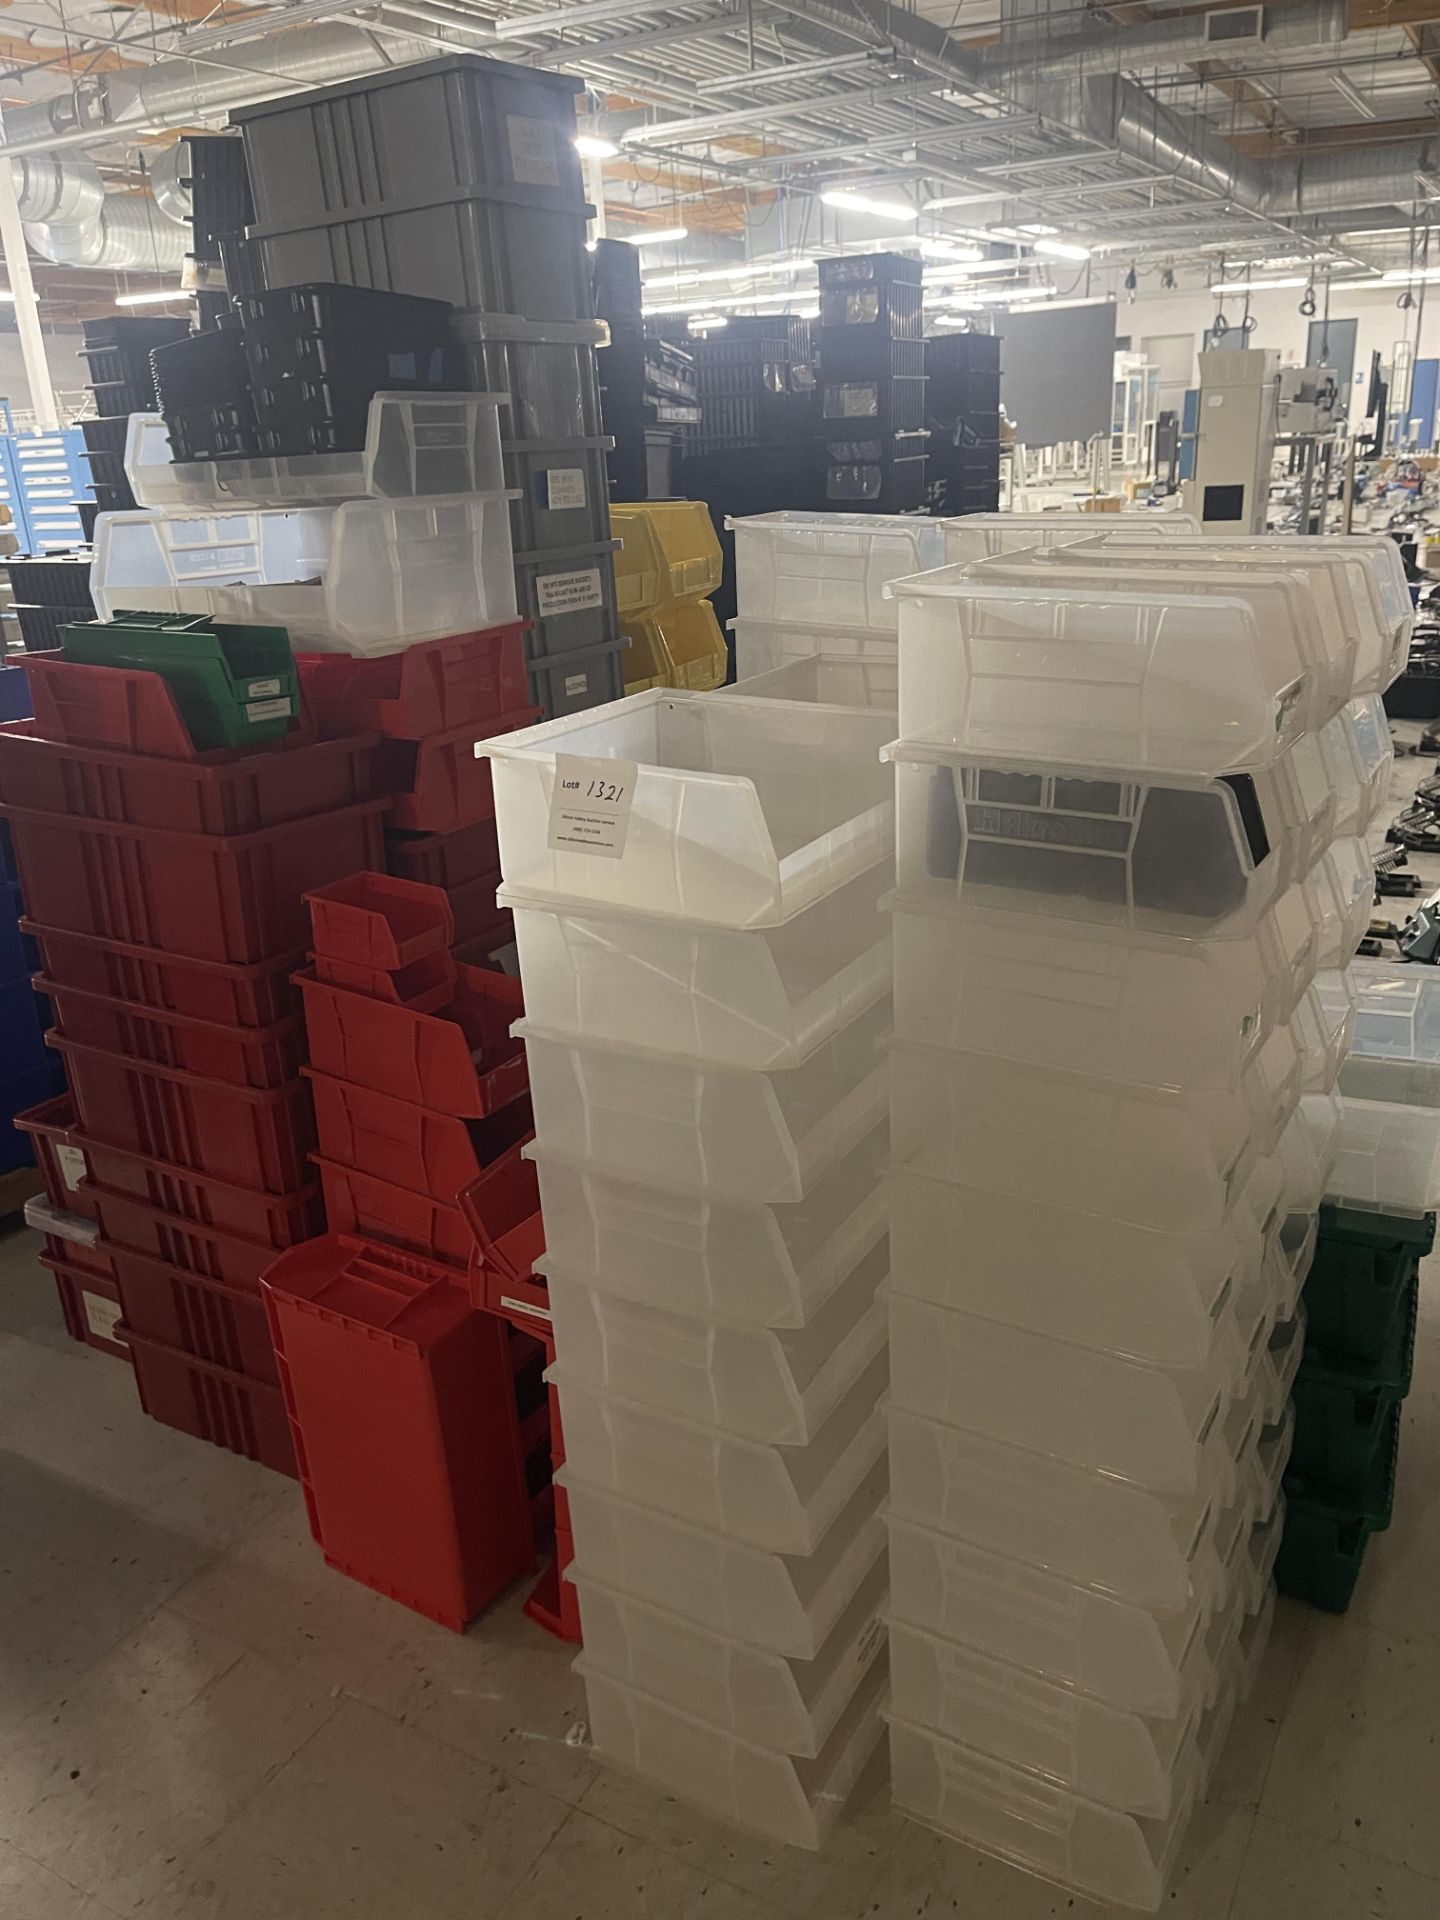 Various storage bins